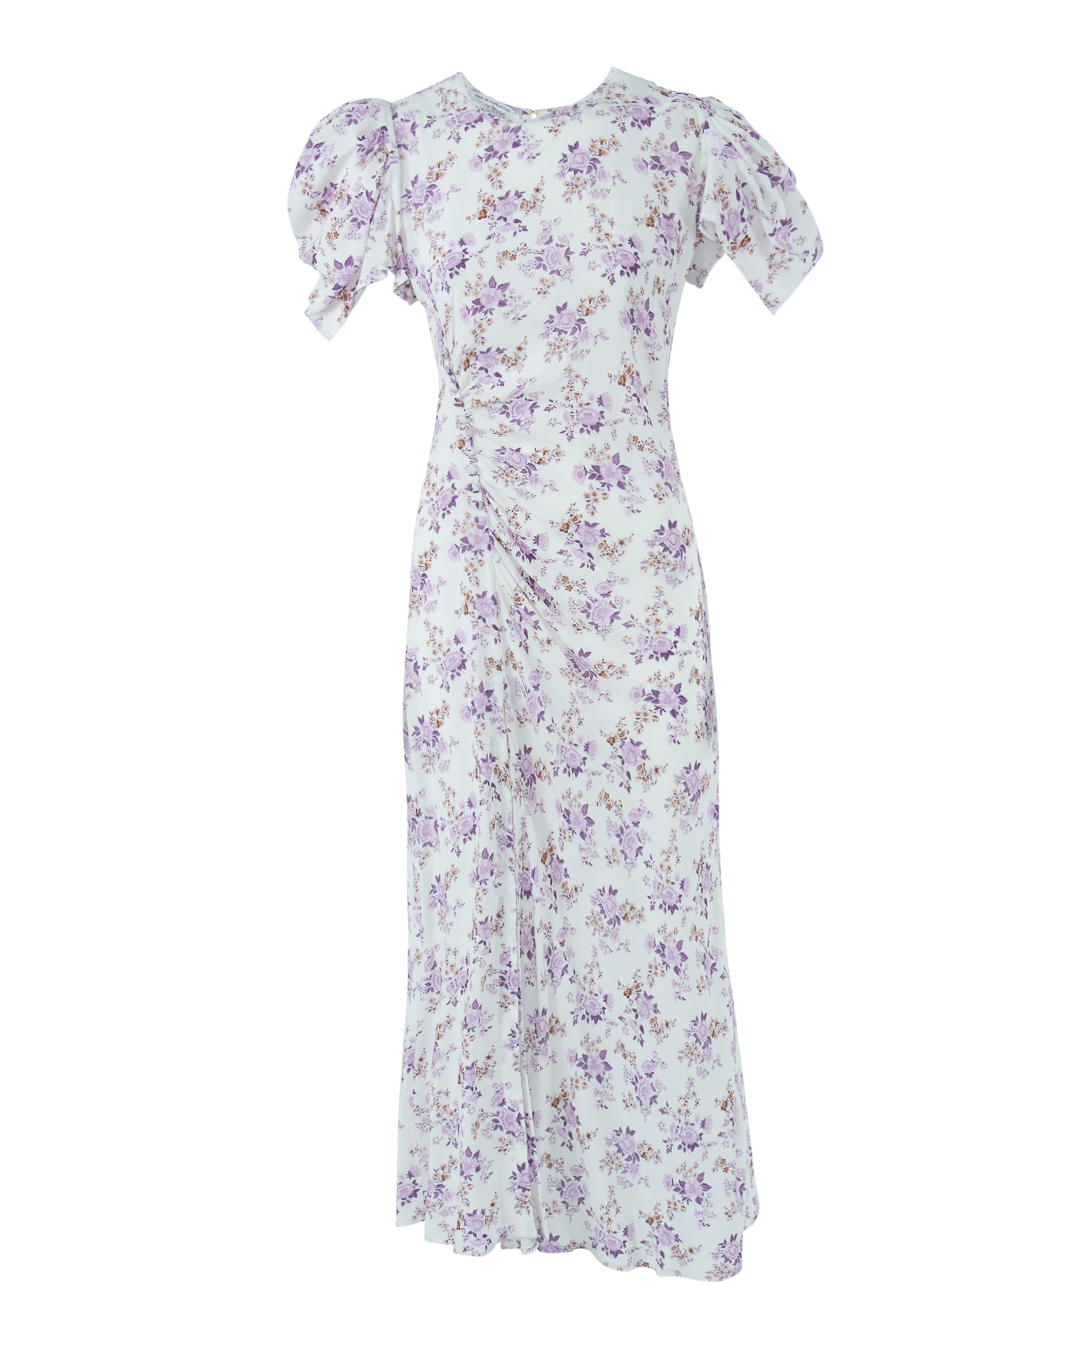 платье MAR DE MARGARITAS MGS3MDMW21KRISTEL белый+фиолетовый l, размер l, цвет белый+фиолетовый MGS3MDMW21KRISTEL белый+фиолетовый l - фото 1